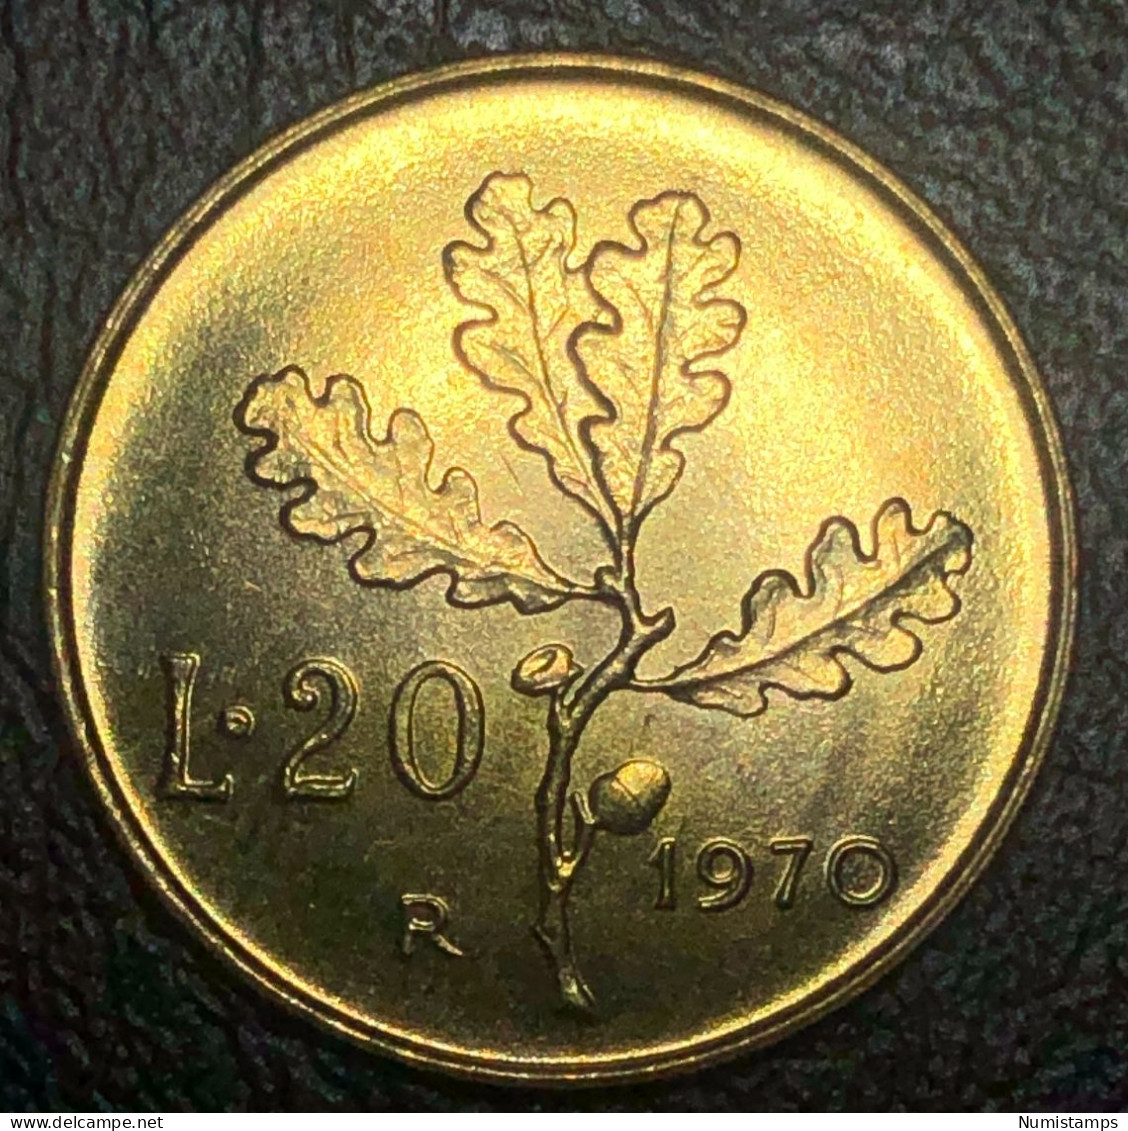 Italia 20 Lire, 1970 Marchio Di Zecca "R" (FDC) - 20 Lire